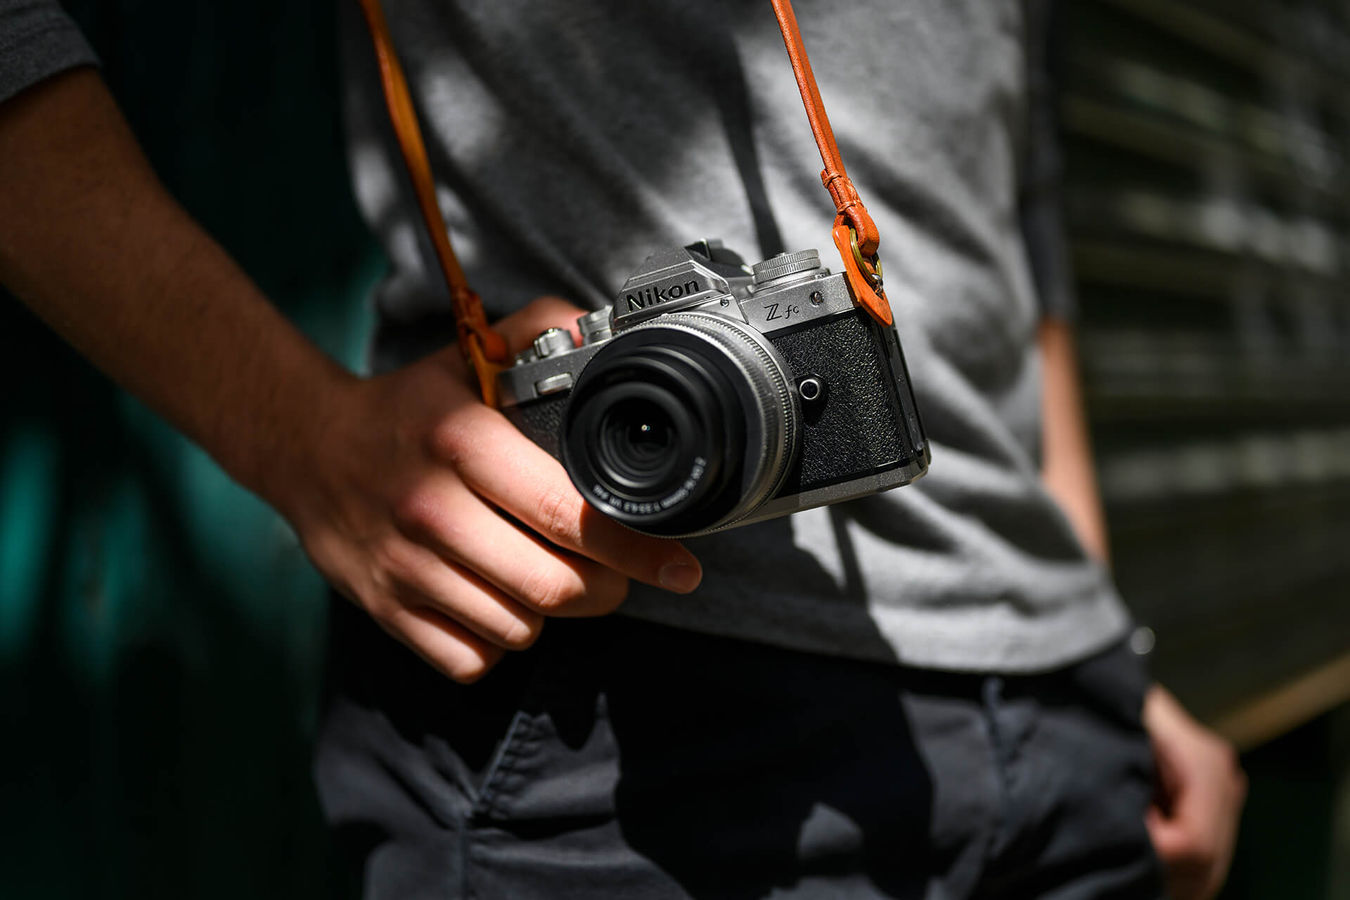 Bezlusterkowiec Nikon Z fc Vlogging KIT | Cena zawiera rabat 450 zł